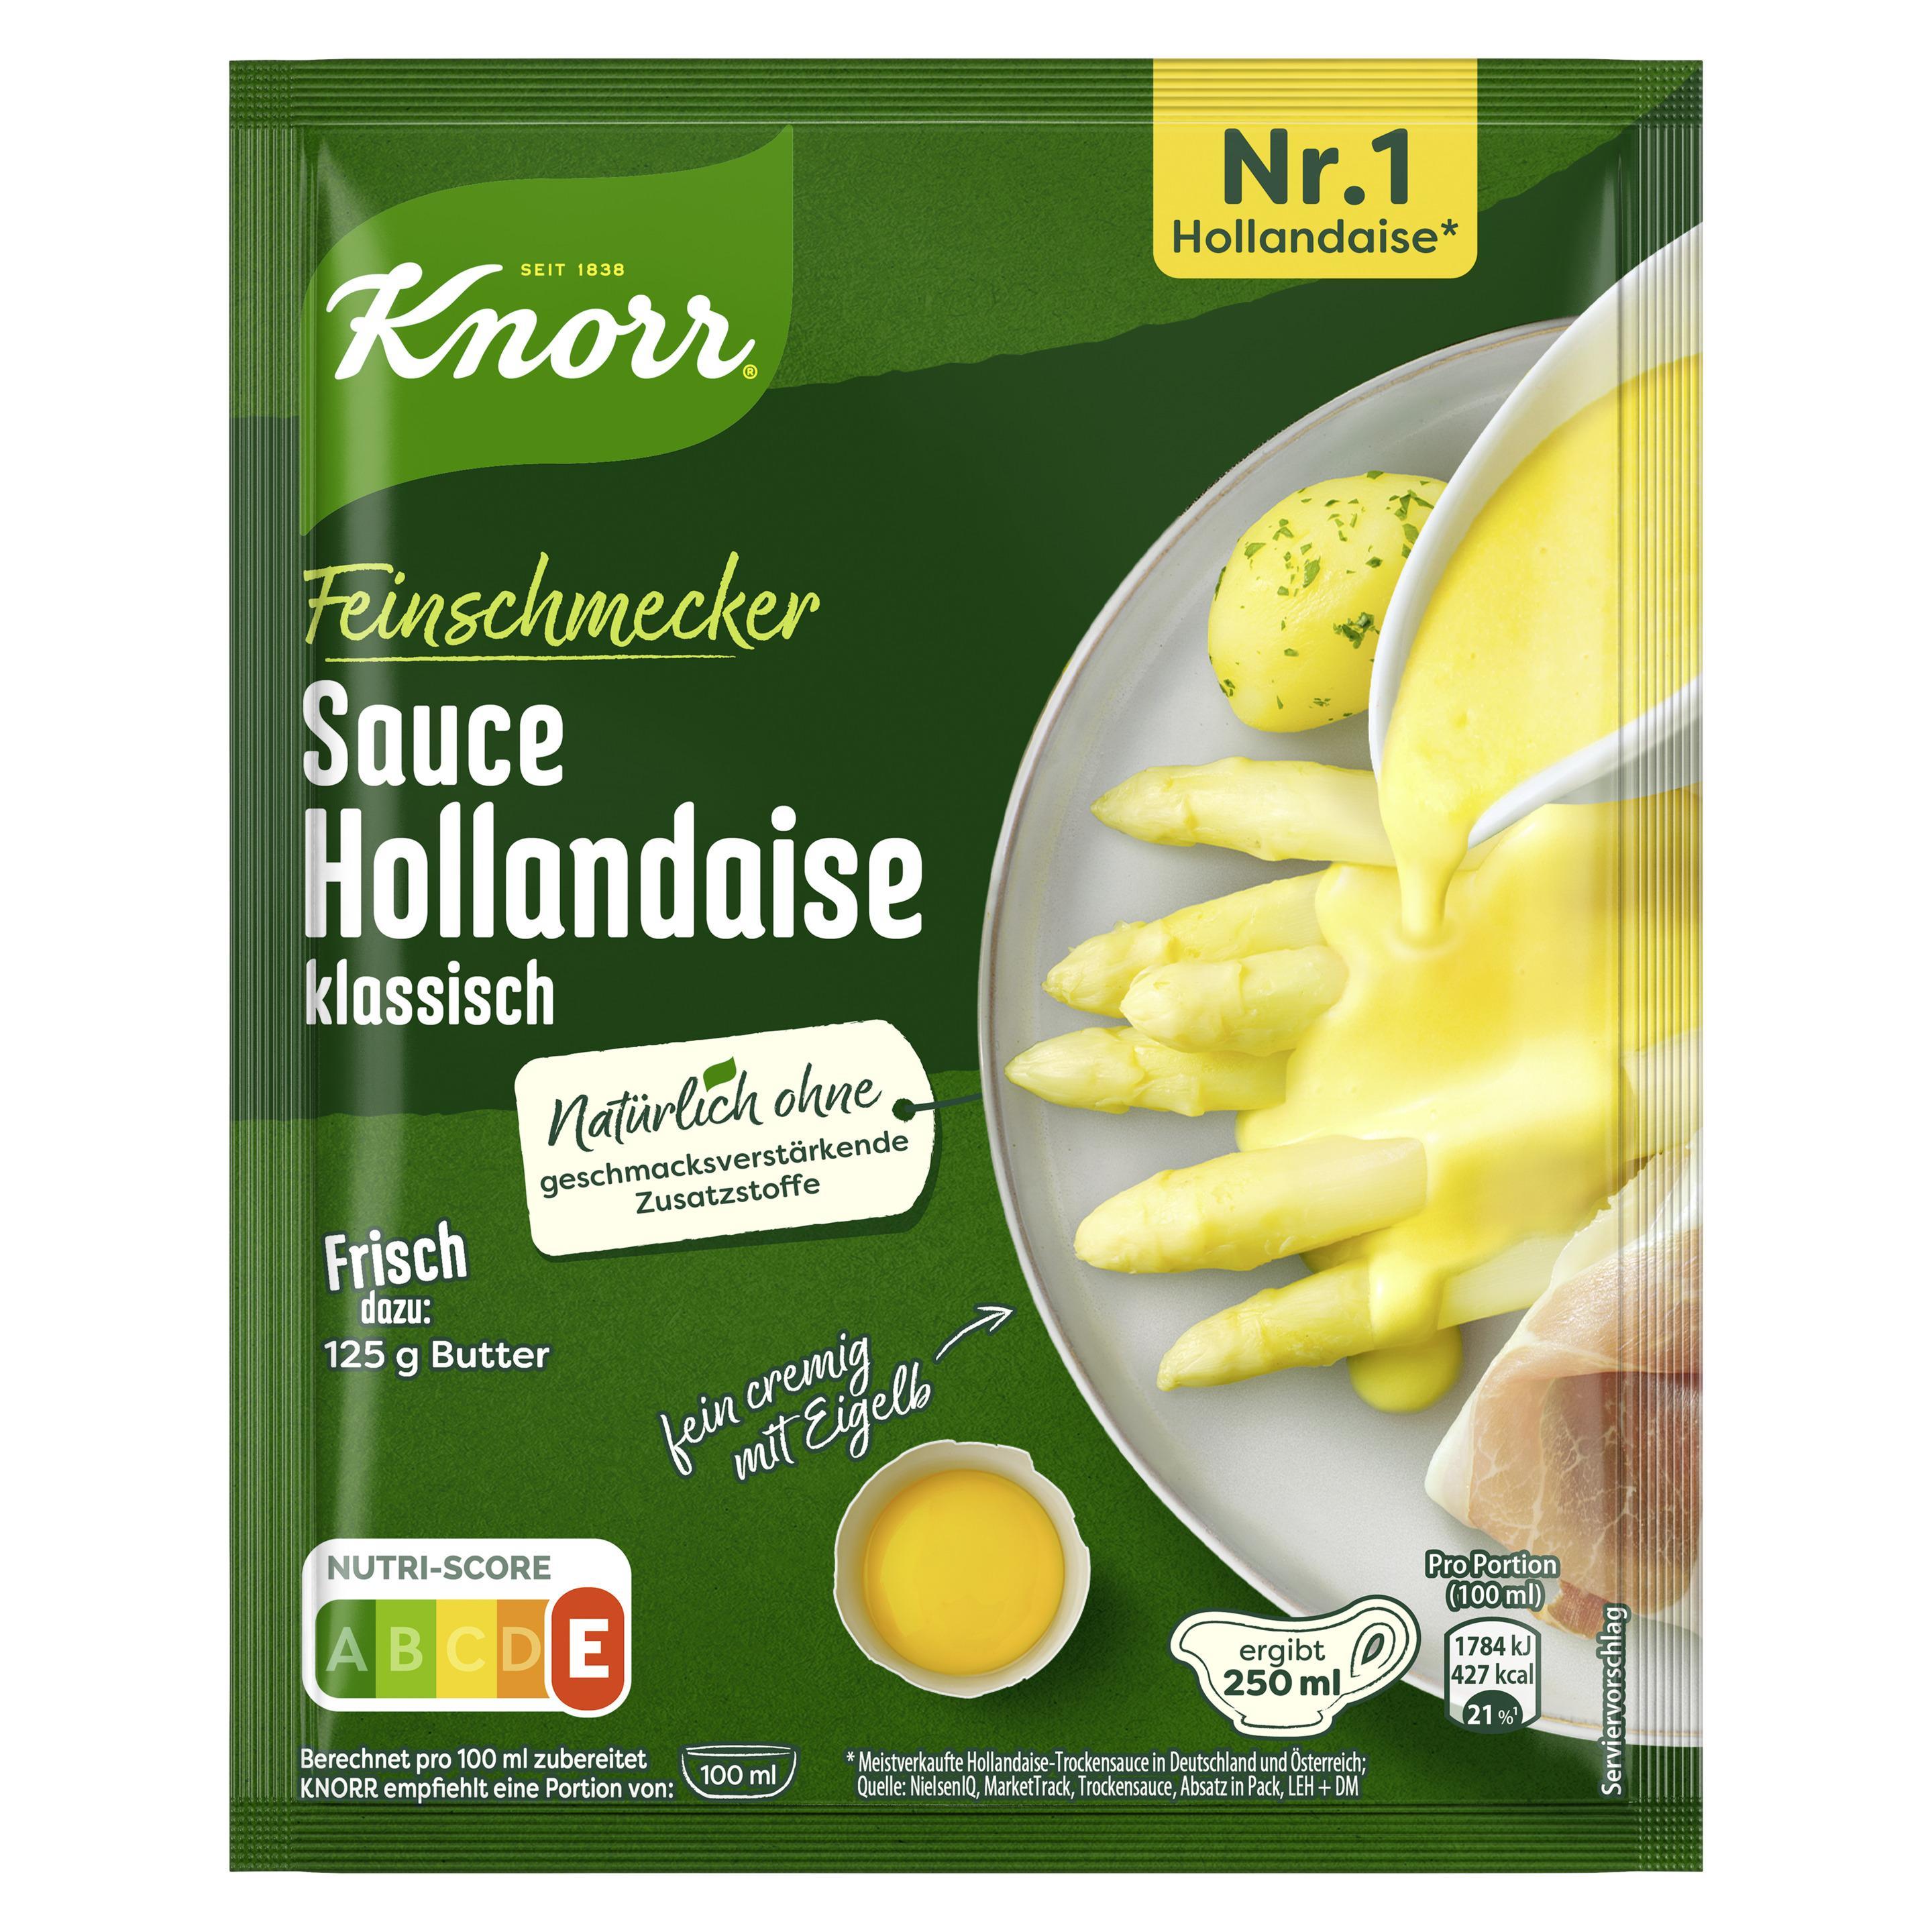 Knorr Feinschmecker Sauce Hollandaise klassisch ergibt 250 ml